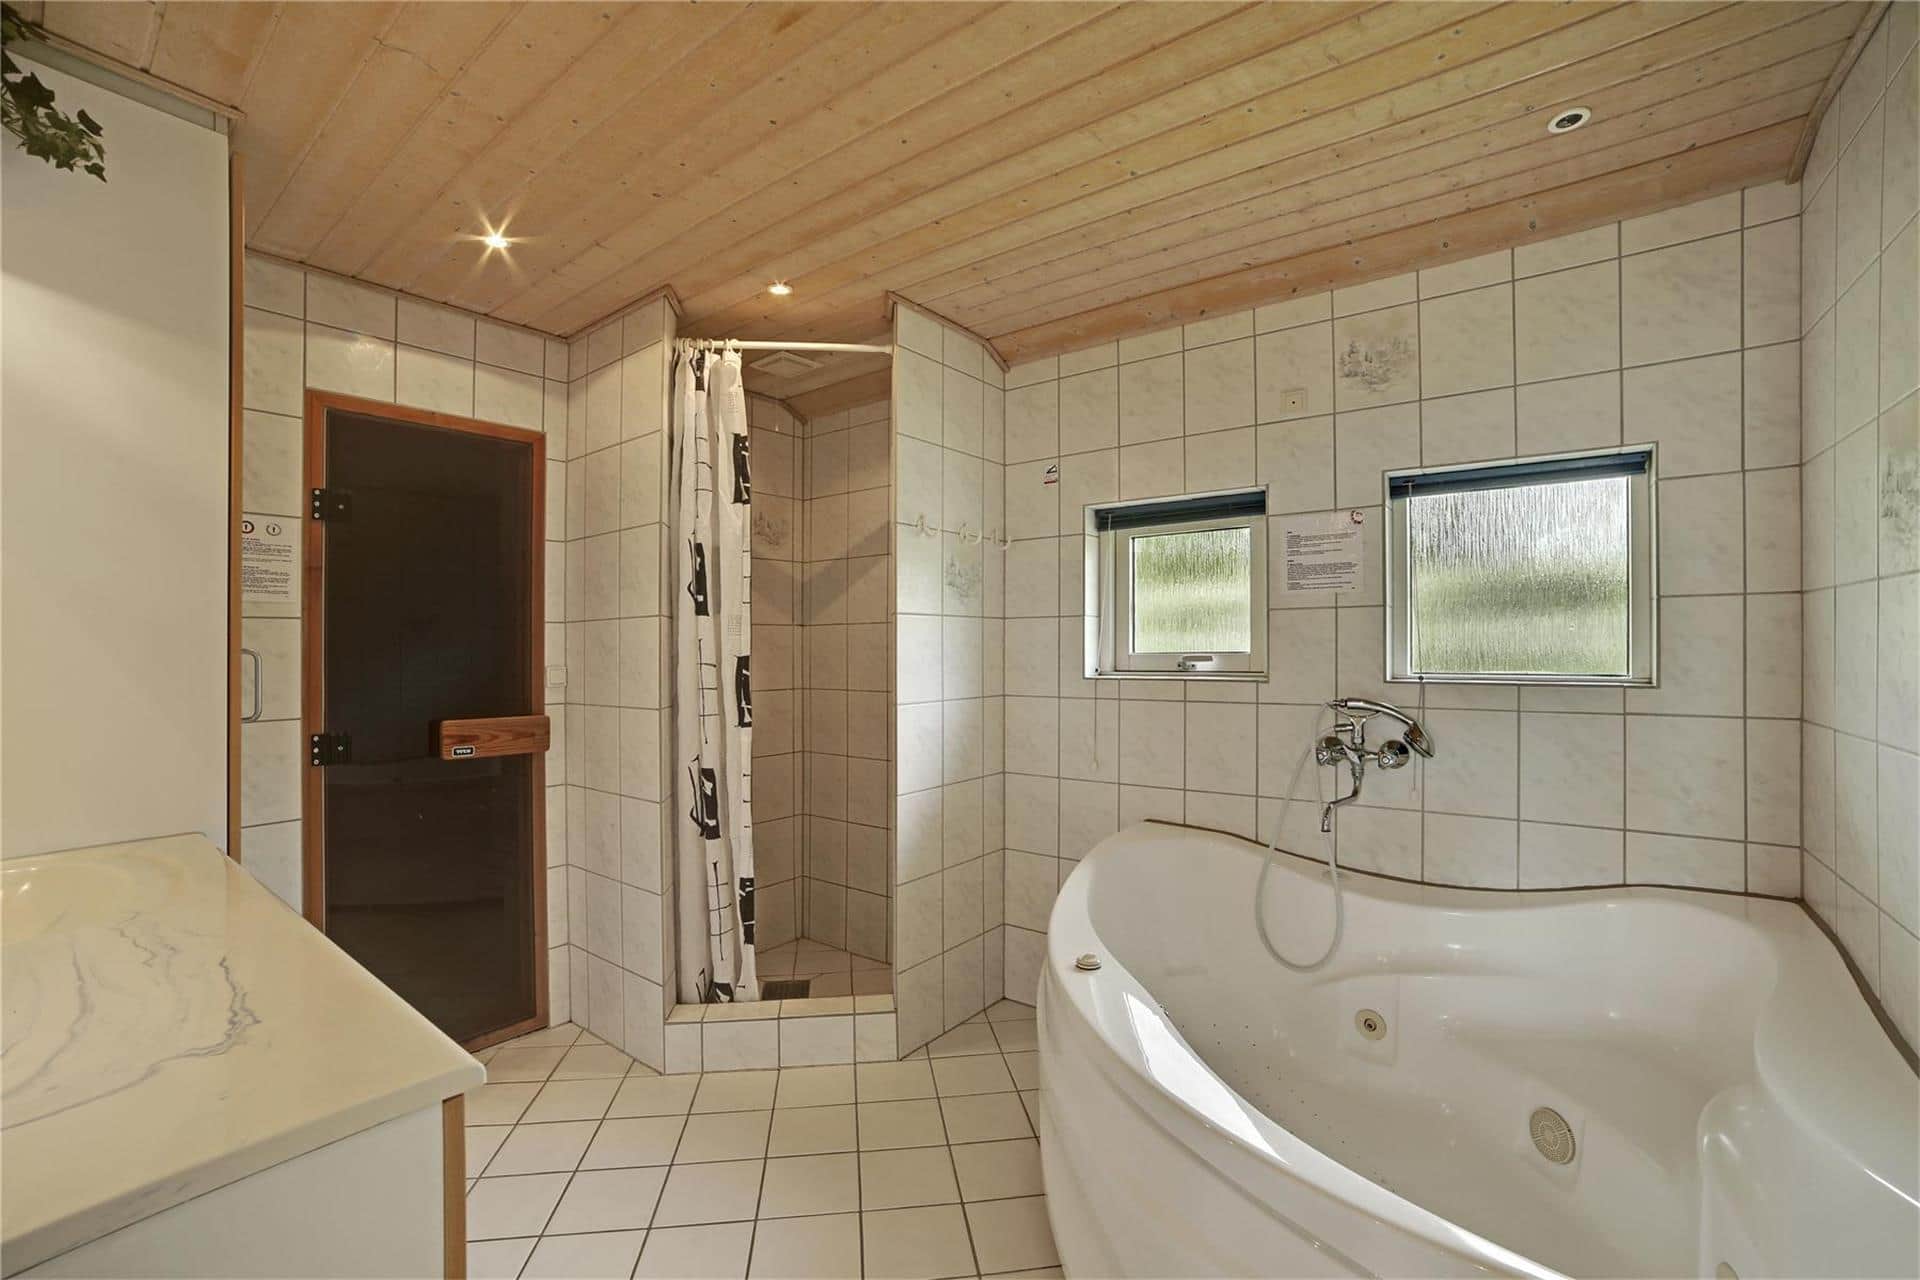 Bathroom 1 Image 2-19 Holiday-home 30410, Hulager 2, DK - 8300 Odder